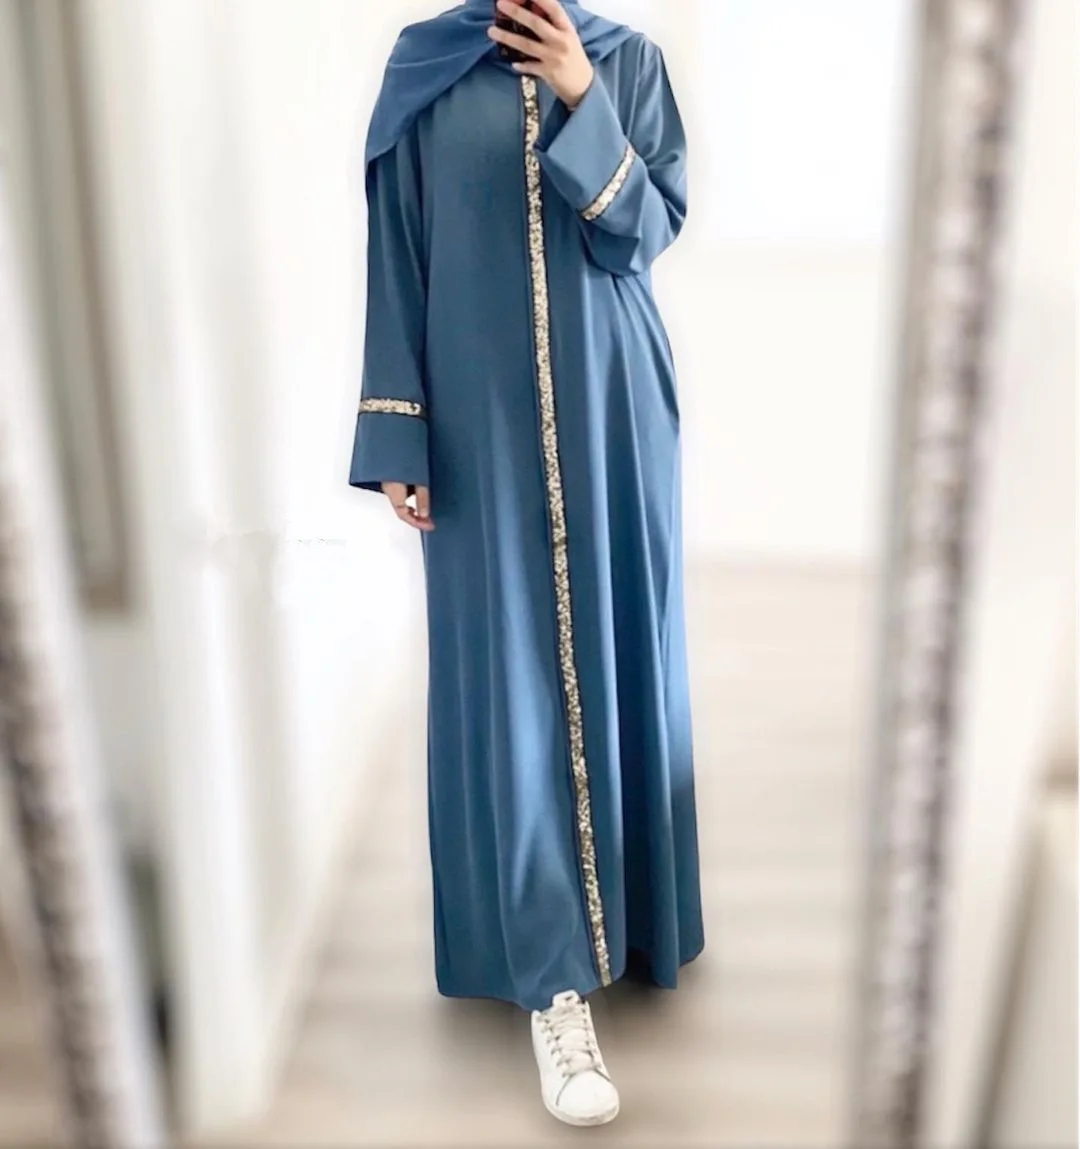 Мусульманская абайя для женщин Средний Восток, длинные платья, молитвенная одежда, химар, кафтан, Юба, хиджаб, платье, мусульманская одежда от AliExpress WW